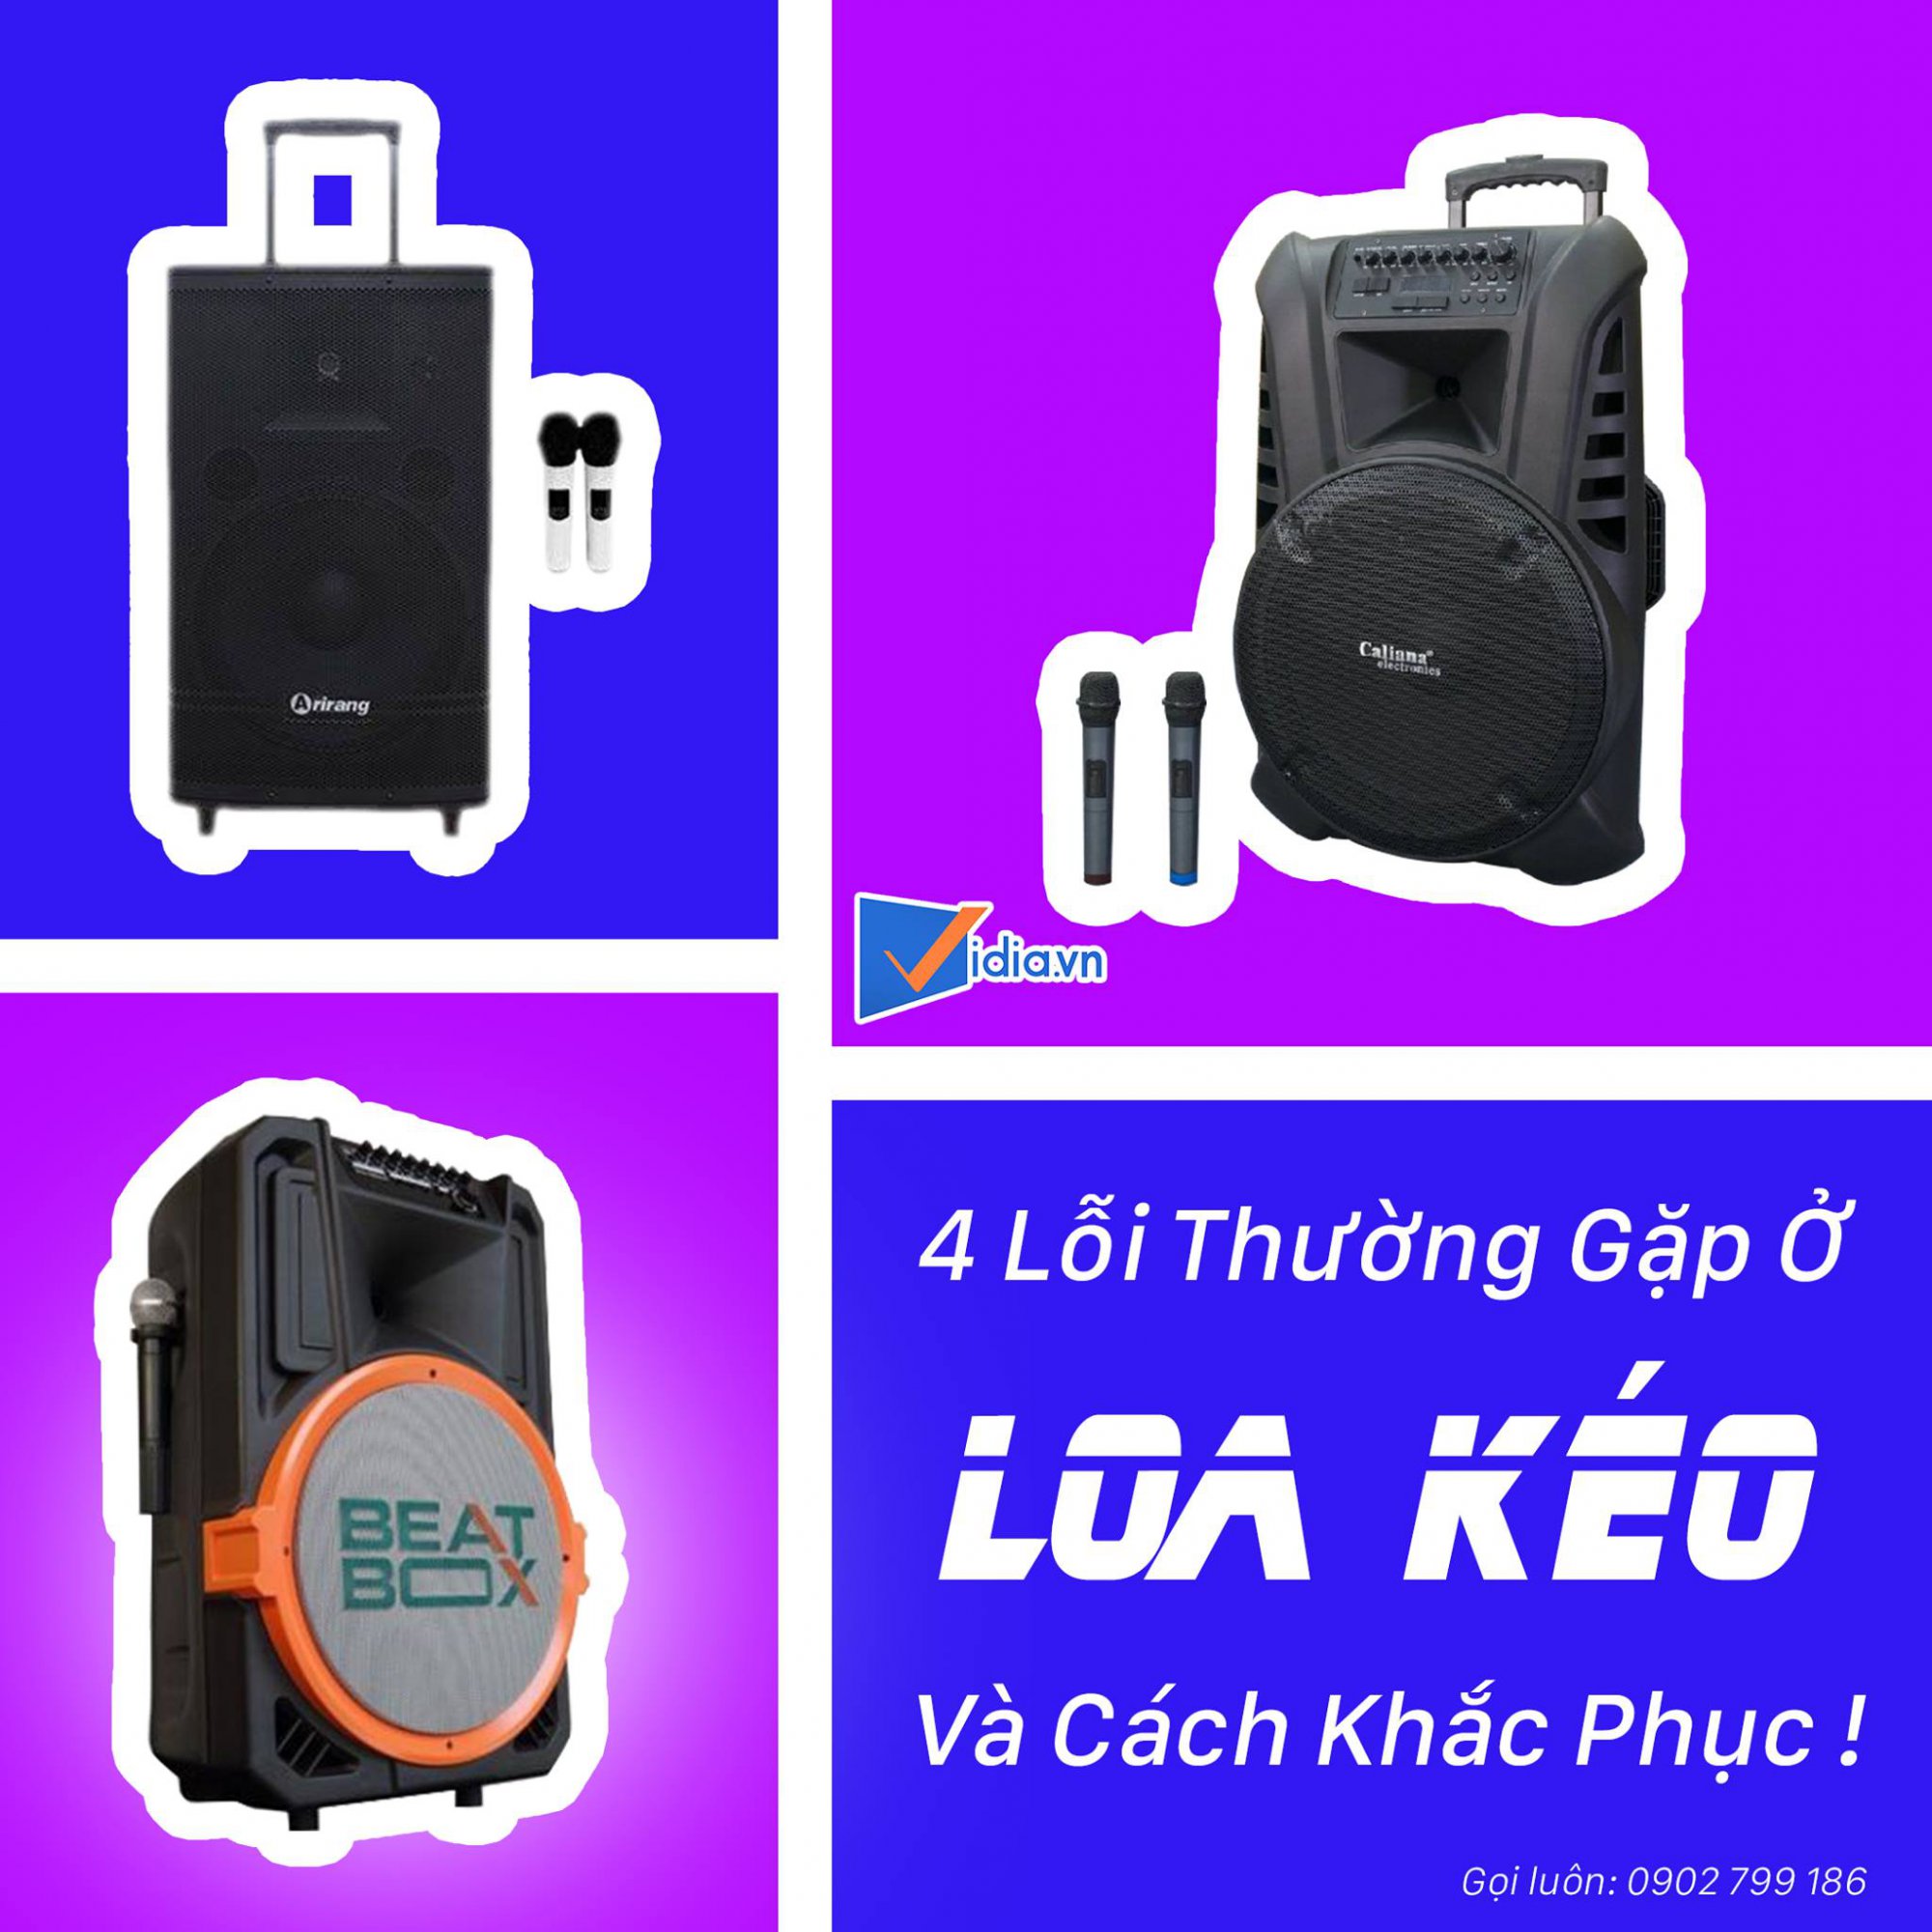 4-loi-thuong-gap-loa-keo